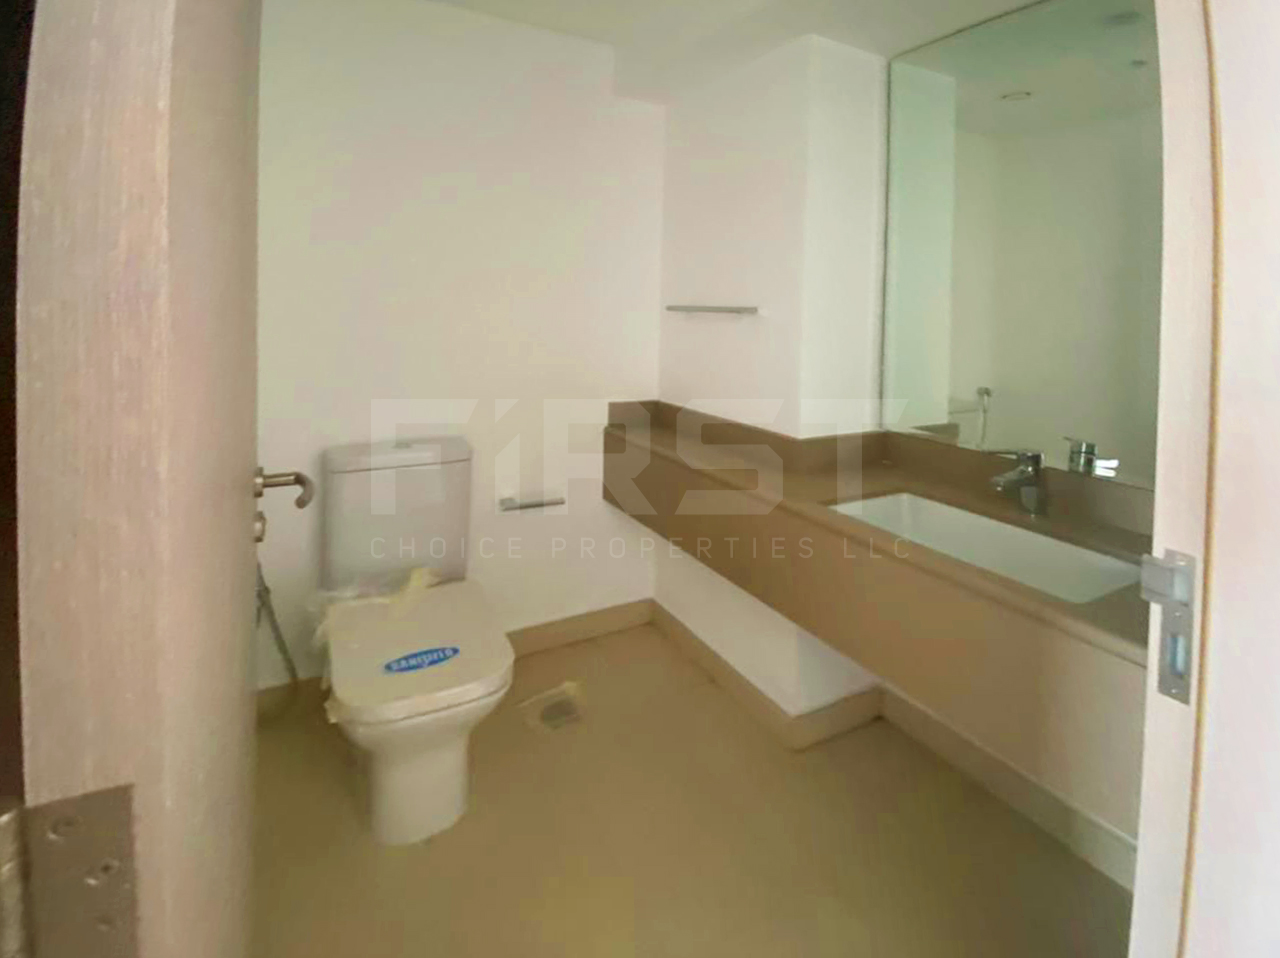 Internal Photos of 3 Bedroom Partment in Water s Edge Yas Island Abu Dhabi UAE (4).jpg